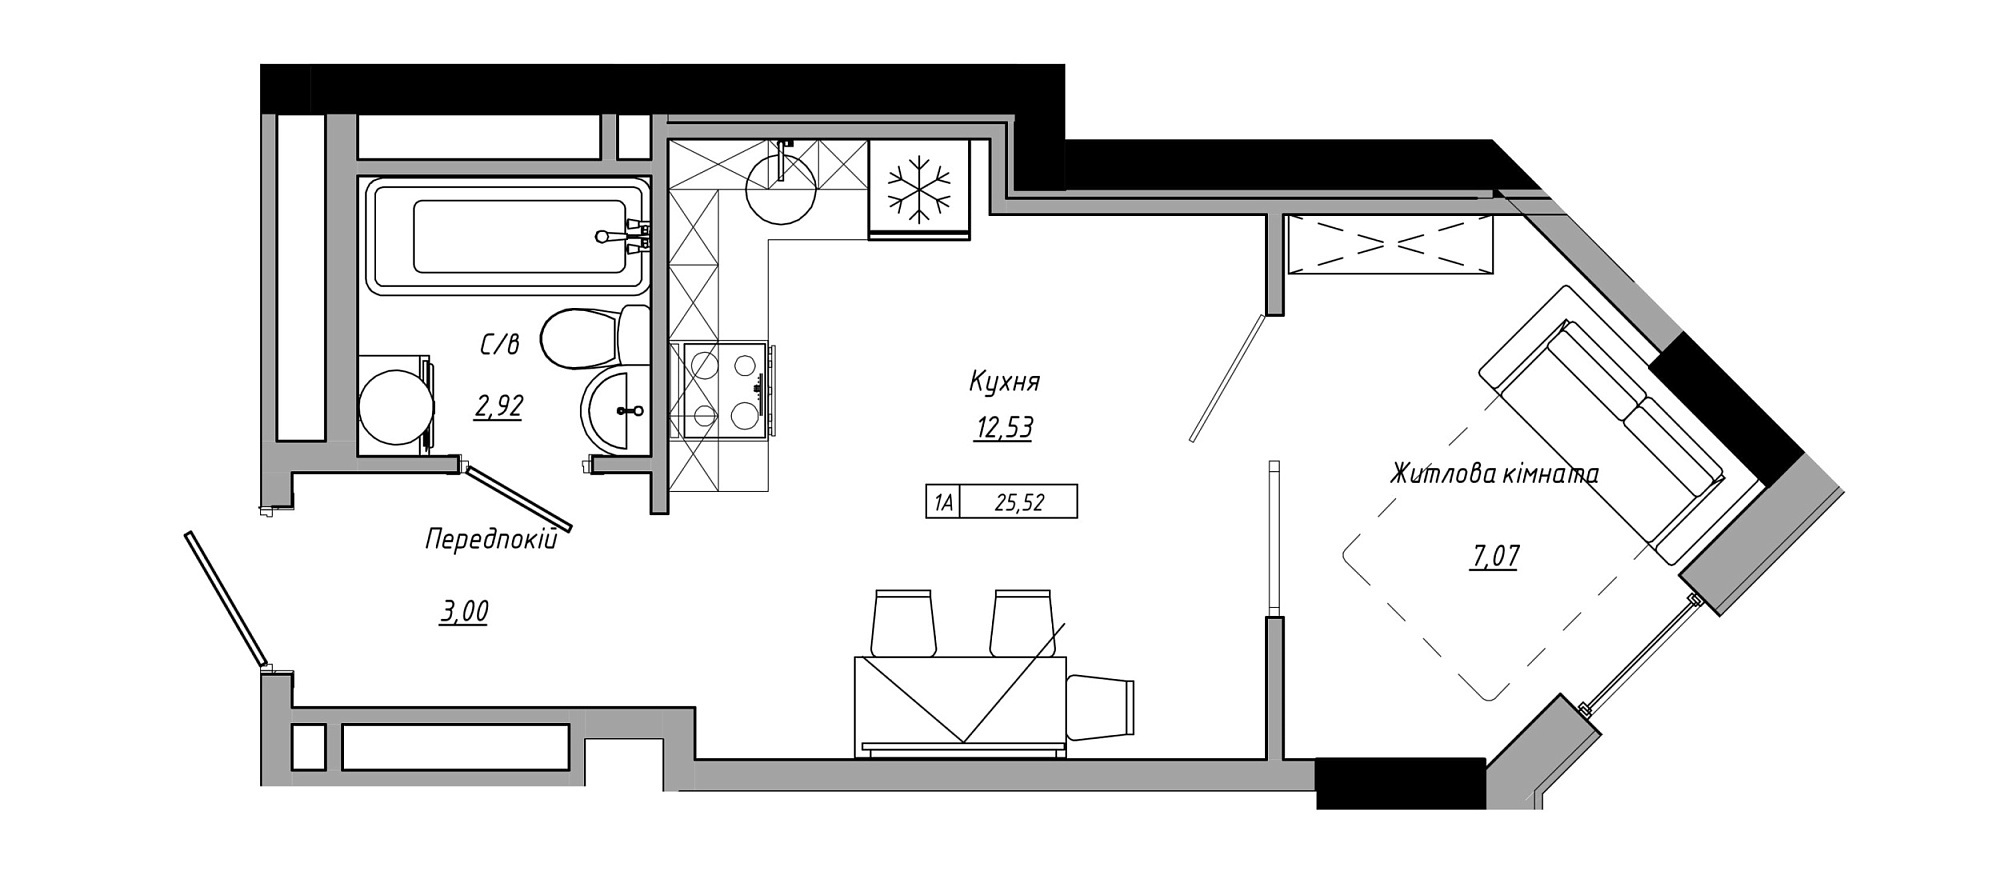 Планування 1-к квартира площею 25.52м2, AB-21-12/00001.